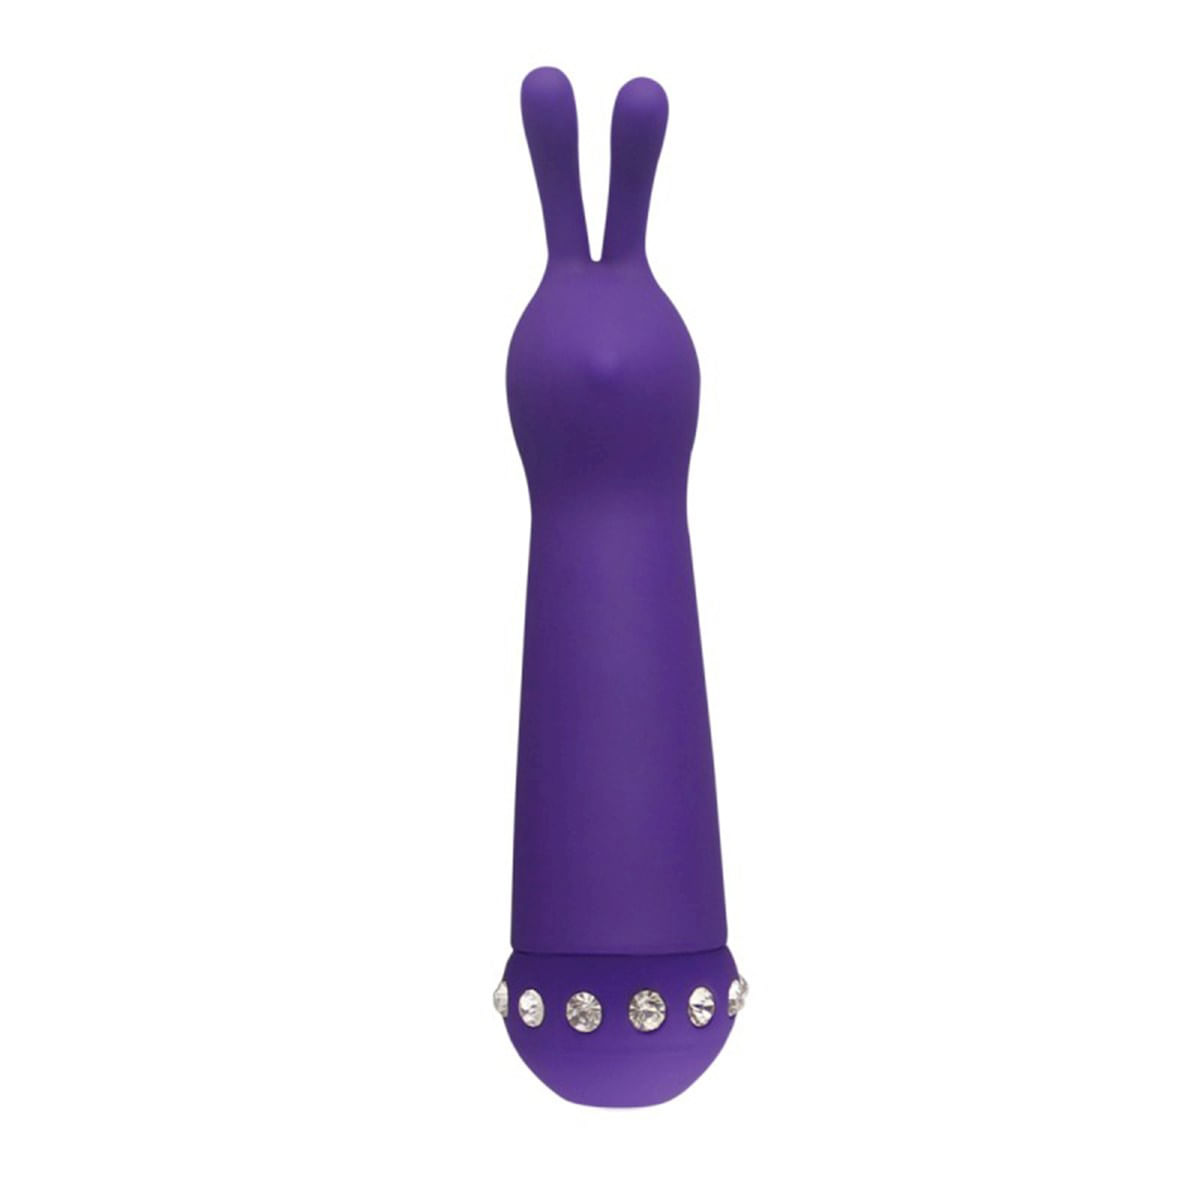 Estimulador Feminino em Formato de Coelho com 10 Modos de Vibração Aphrodisia Bunny Miss Collection